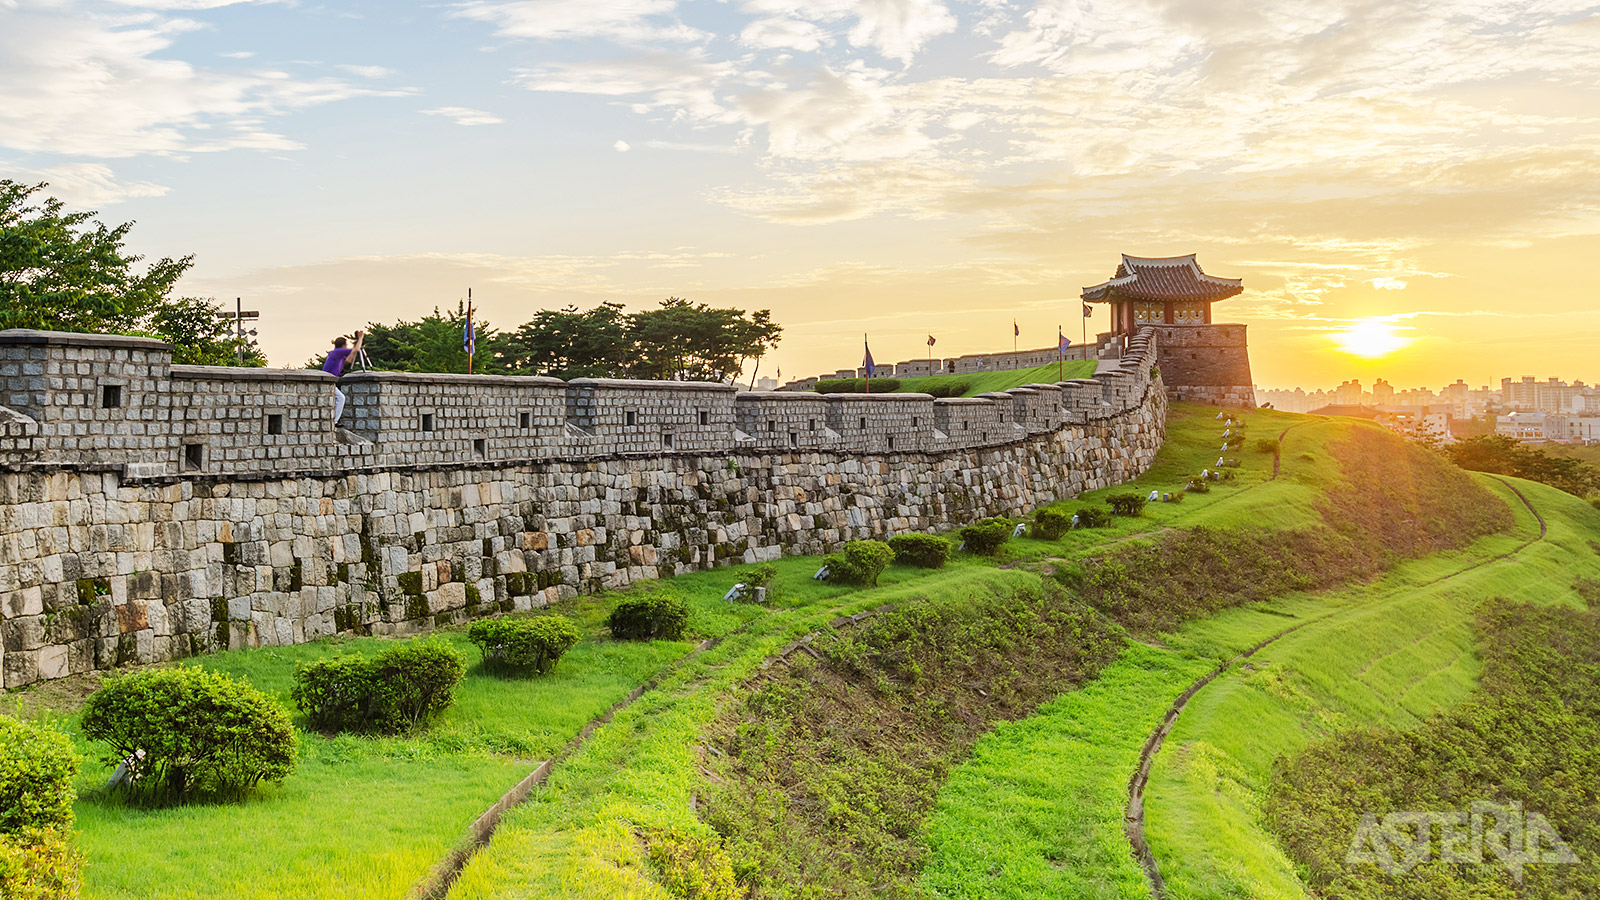 Het indrukwekkende Hwaseong-fort met zijn 6 km vestingmuren, 4 poorten, verschillende bastions en diverse torens